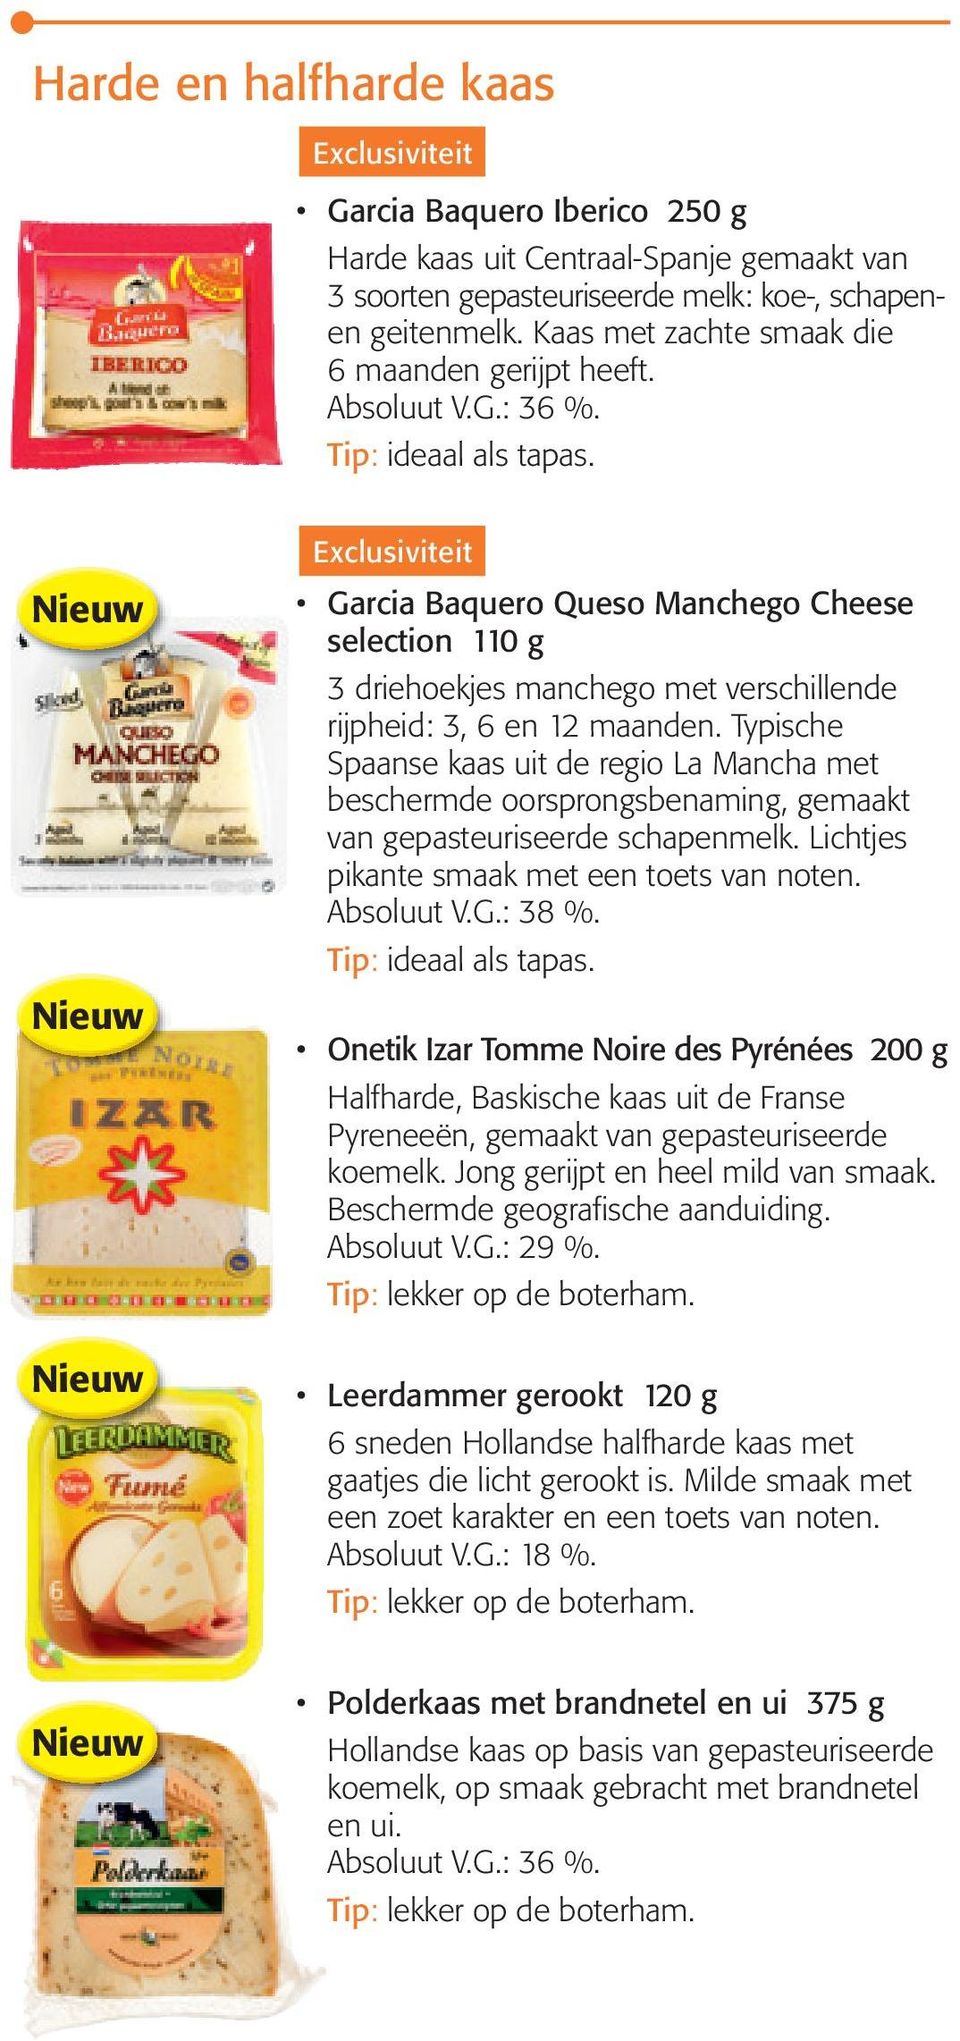 Garcia Baquero Queso Manchego Cheese selection 110 g 3 driehoekjes manchego met verschillende rijpheid: 3, 6 en 12 maanden.